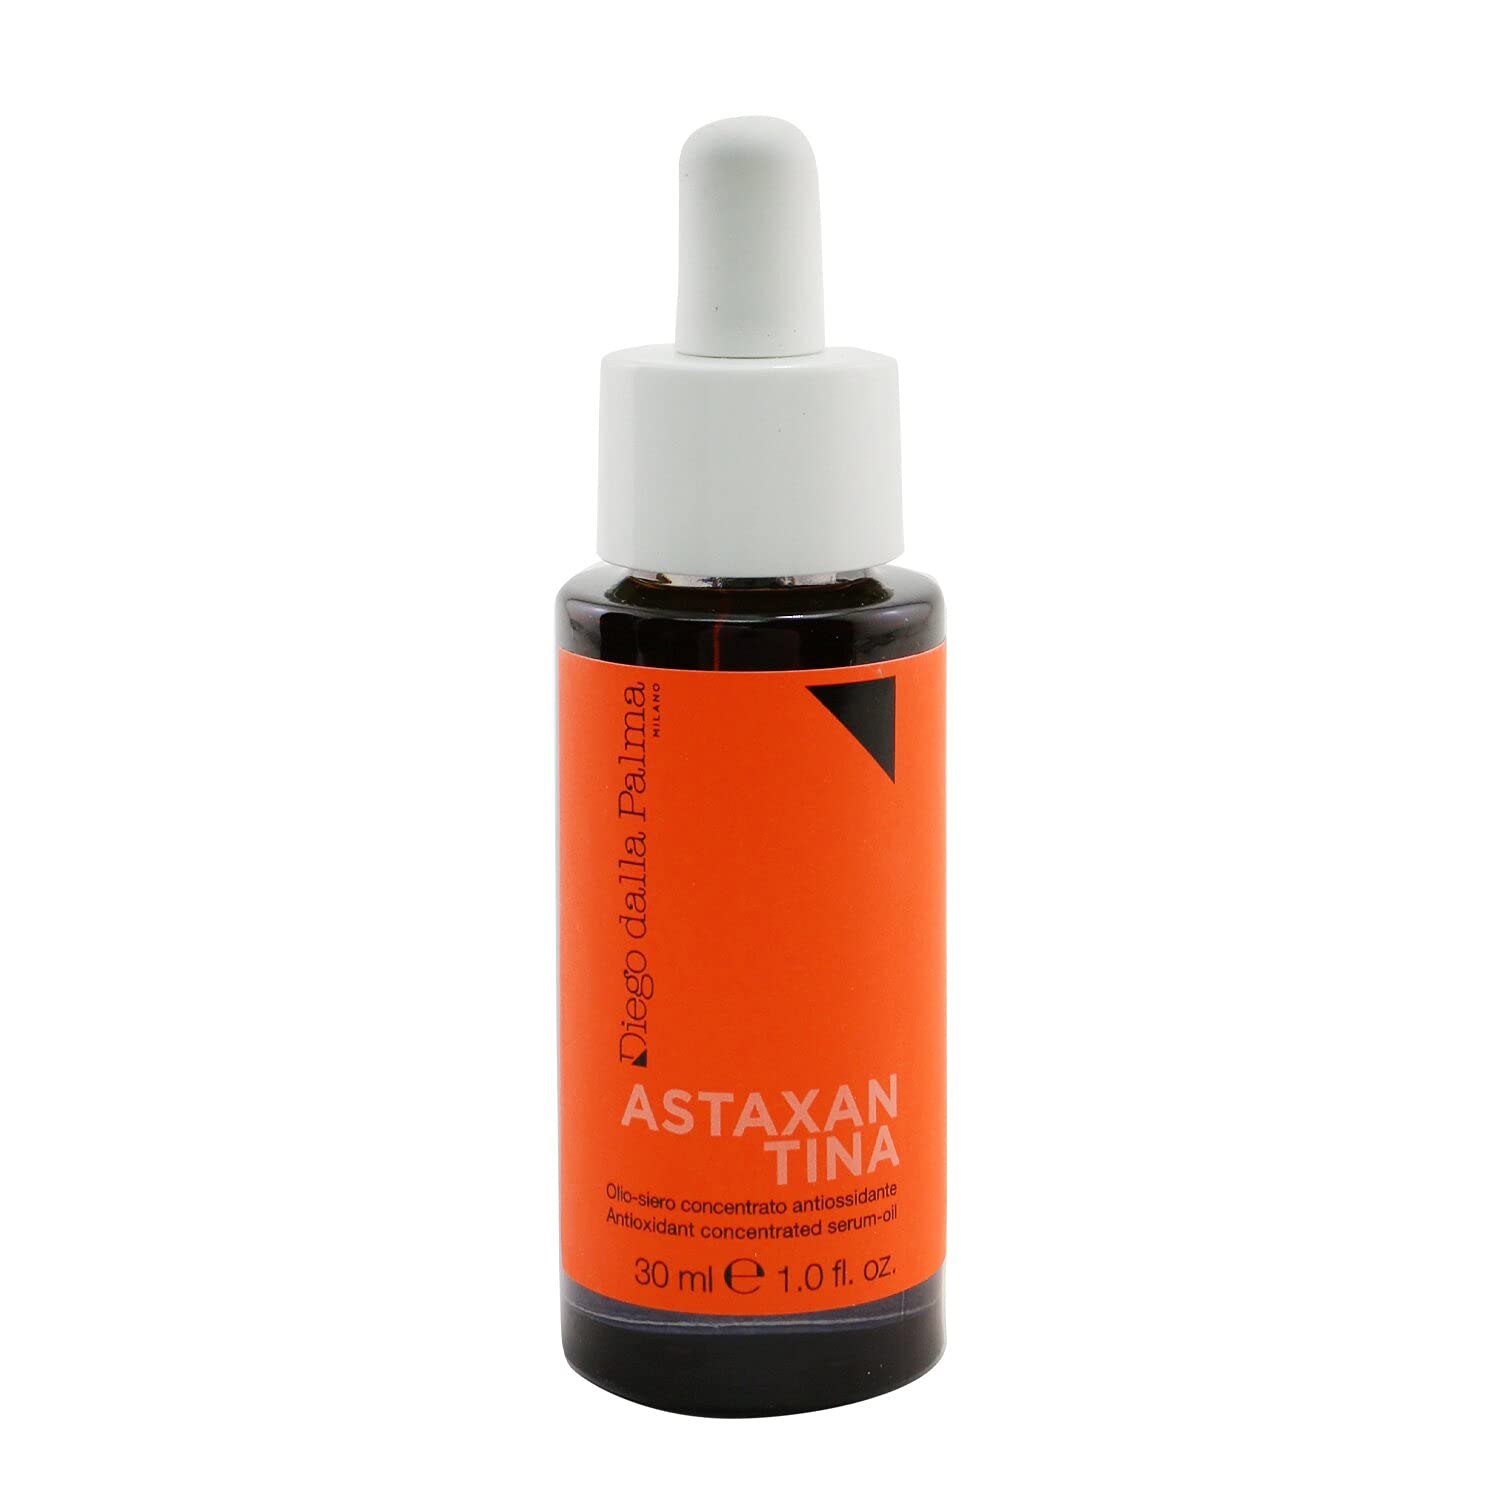 Öl-Serum, Konzentrat mit Astaxantin, 30 ml